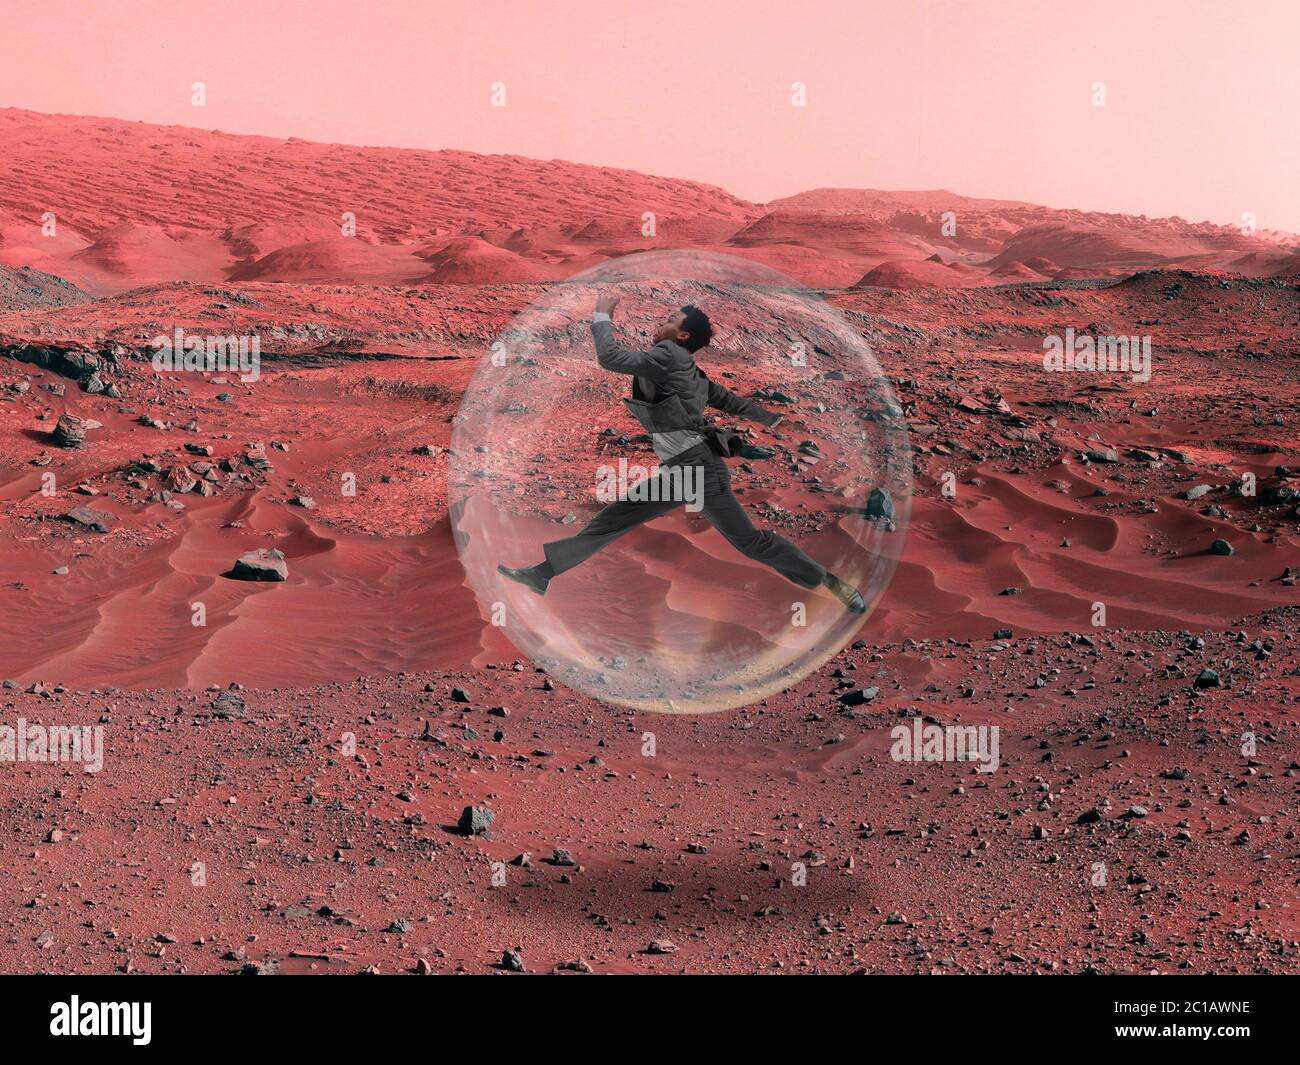 Immaginate che le persone vivano su Marte. Primo piano paesaggio di un pianeta abbandonato, bellezza della vita su Marte. Lavoratore in ufficio in una camera di ossigeno protettiva, bolla. Esplorazione dell'ignoto e della vita in un nuovo spazio. Foto Stock